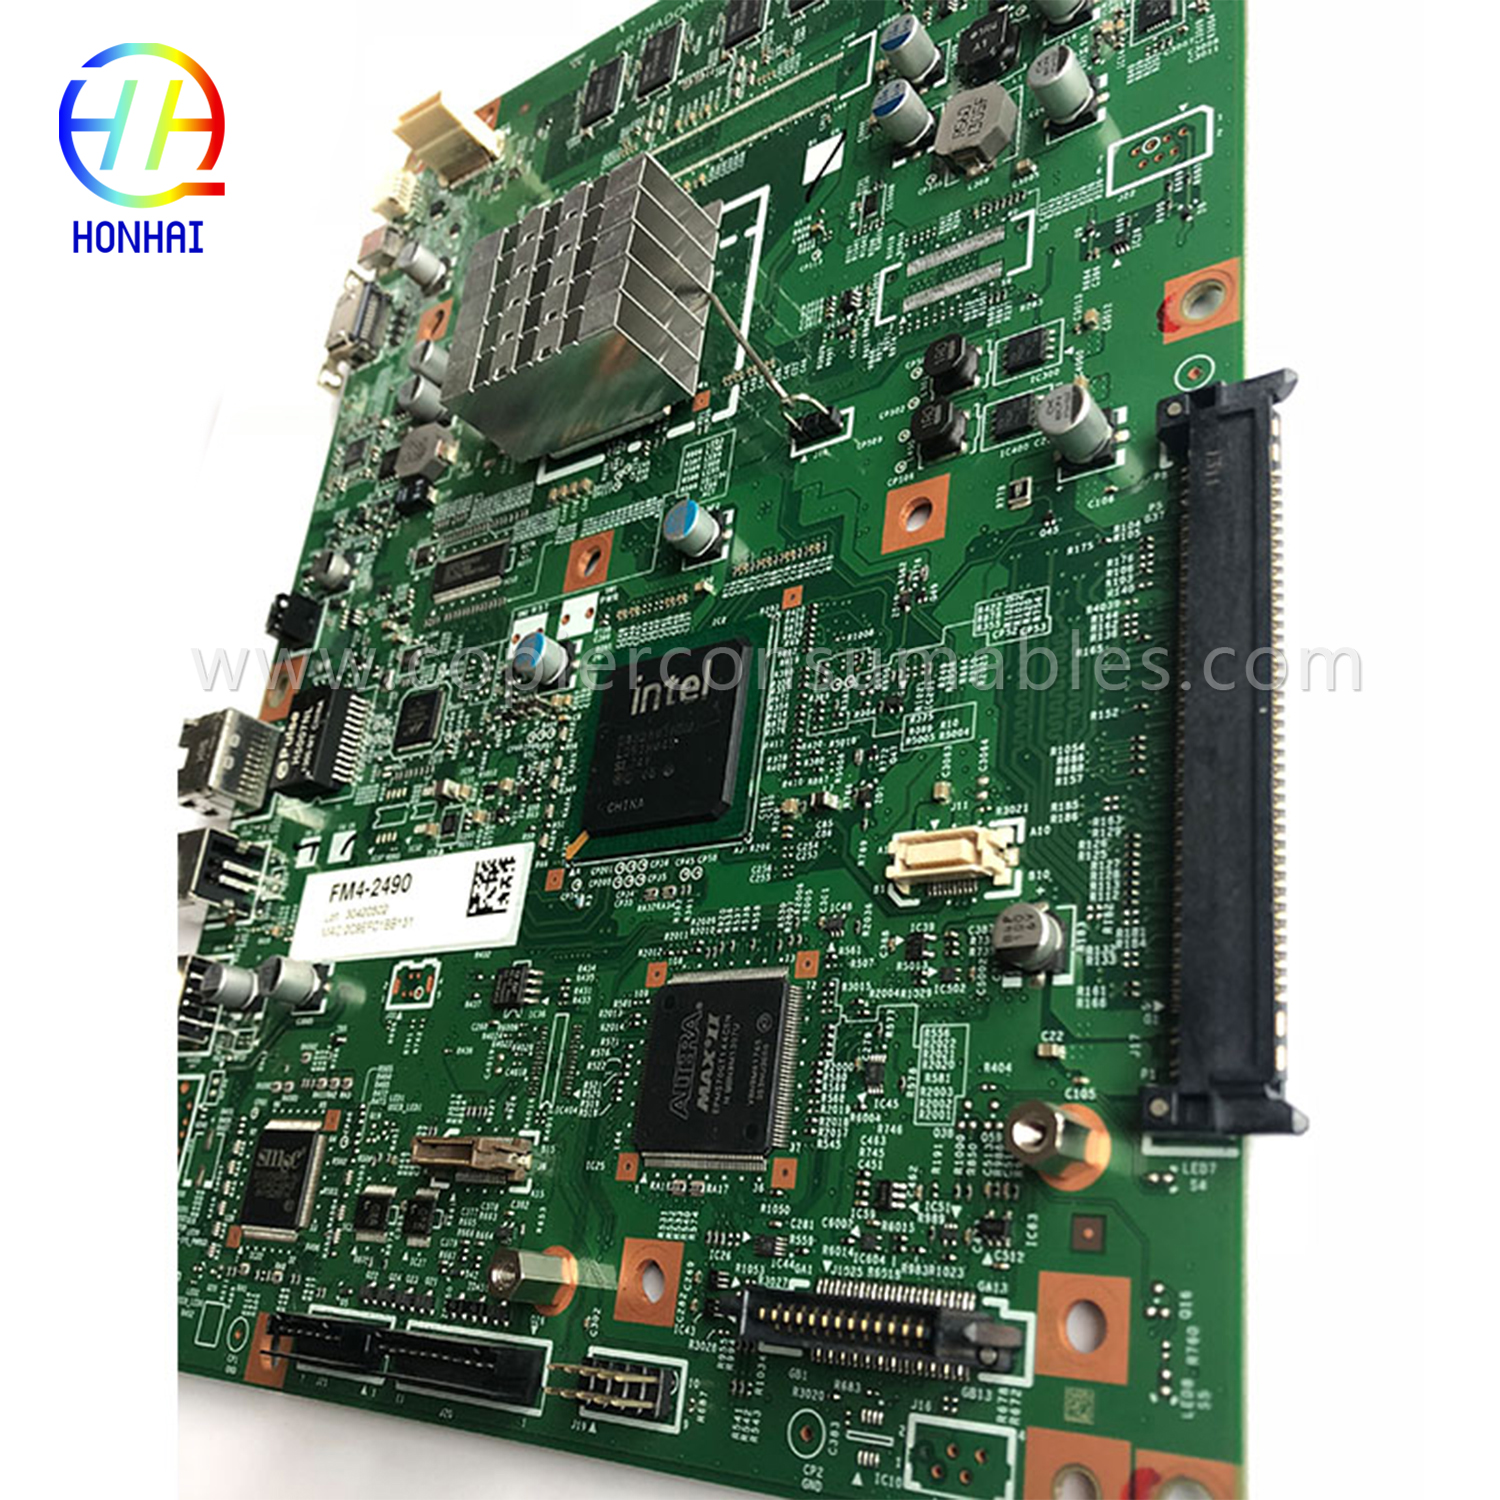 Main Board yeCanon 6255 FM4-2487 OEM Formatter (1)